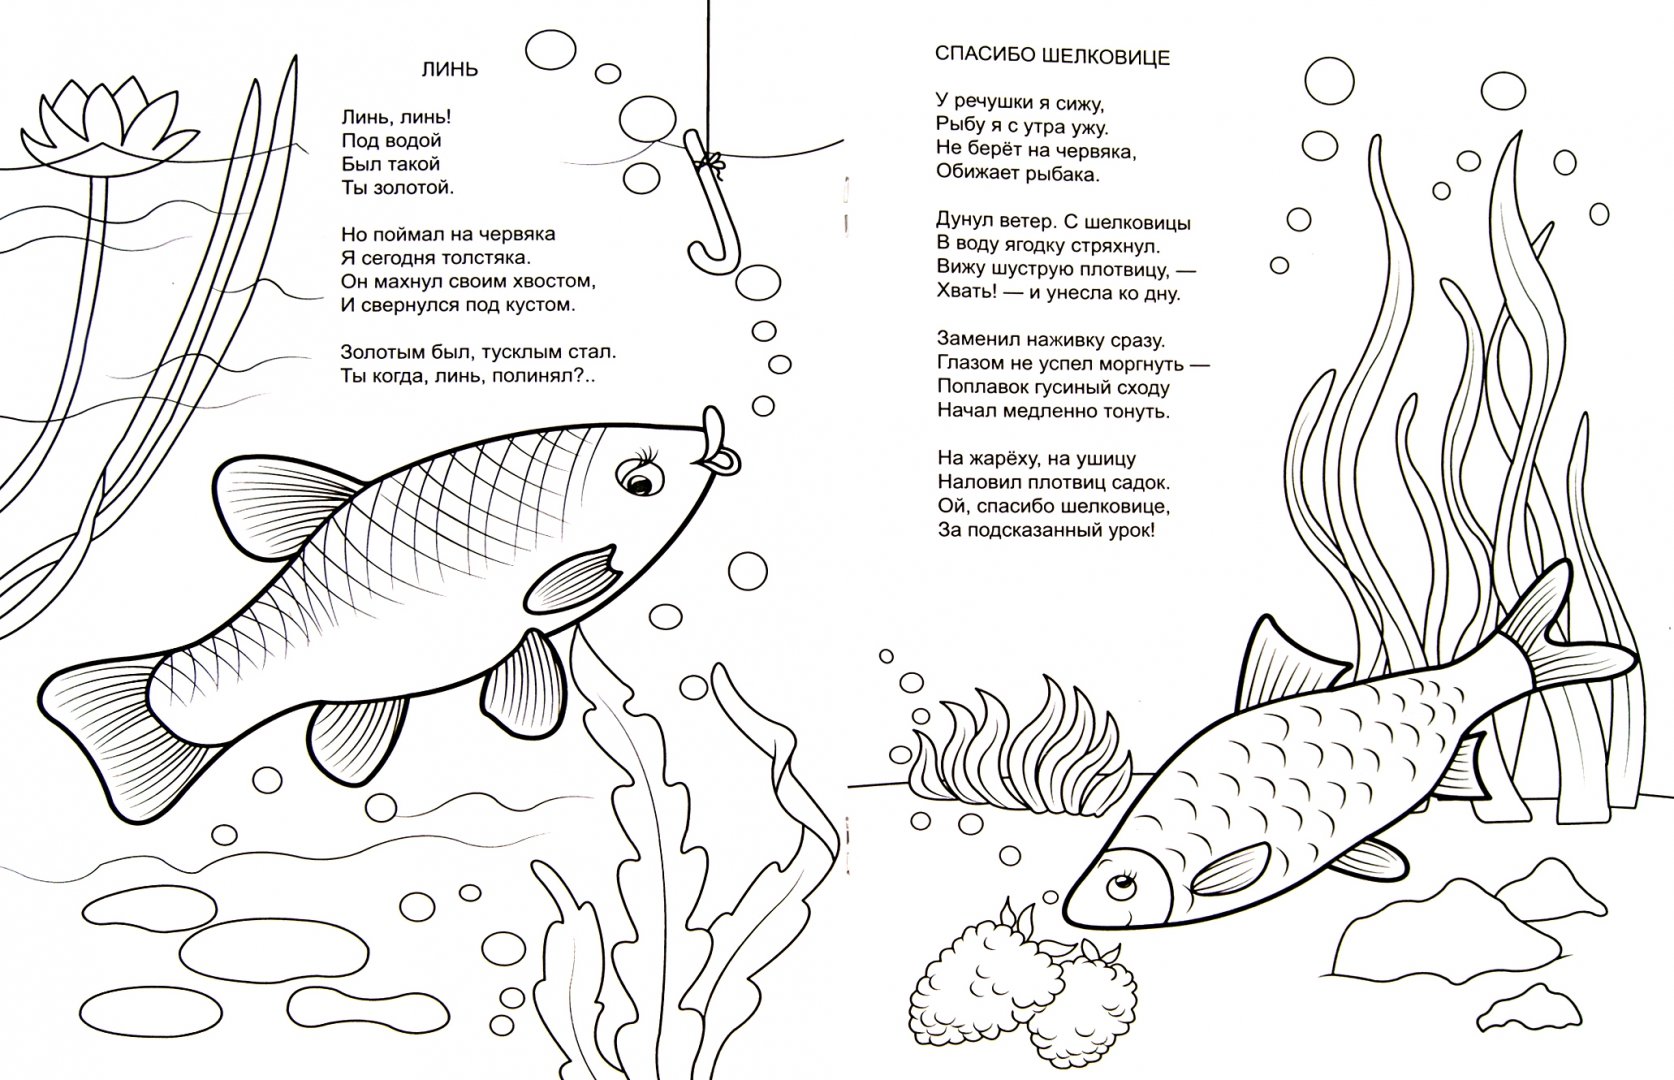 Иллюстрация 1 из 11 для Форелевая речка - Н. Красильников | Лабиринт - книги. Источник: Лабиринт